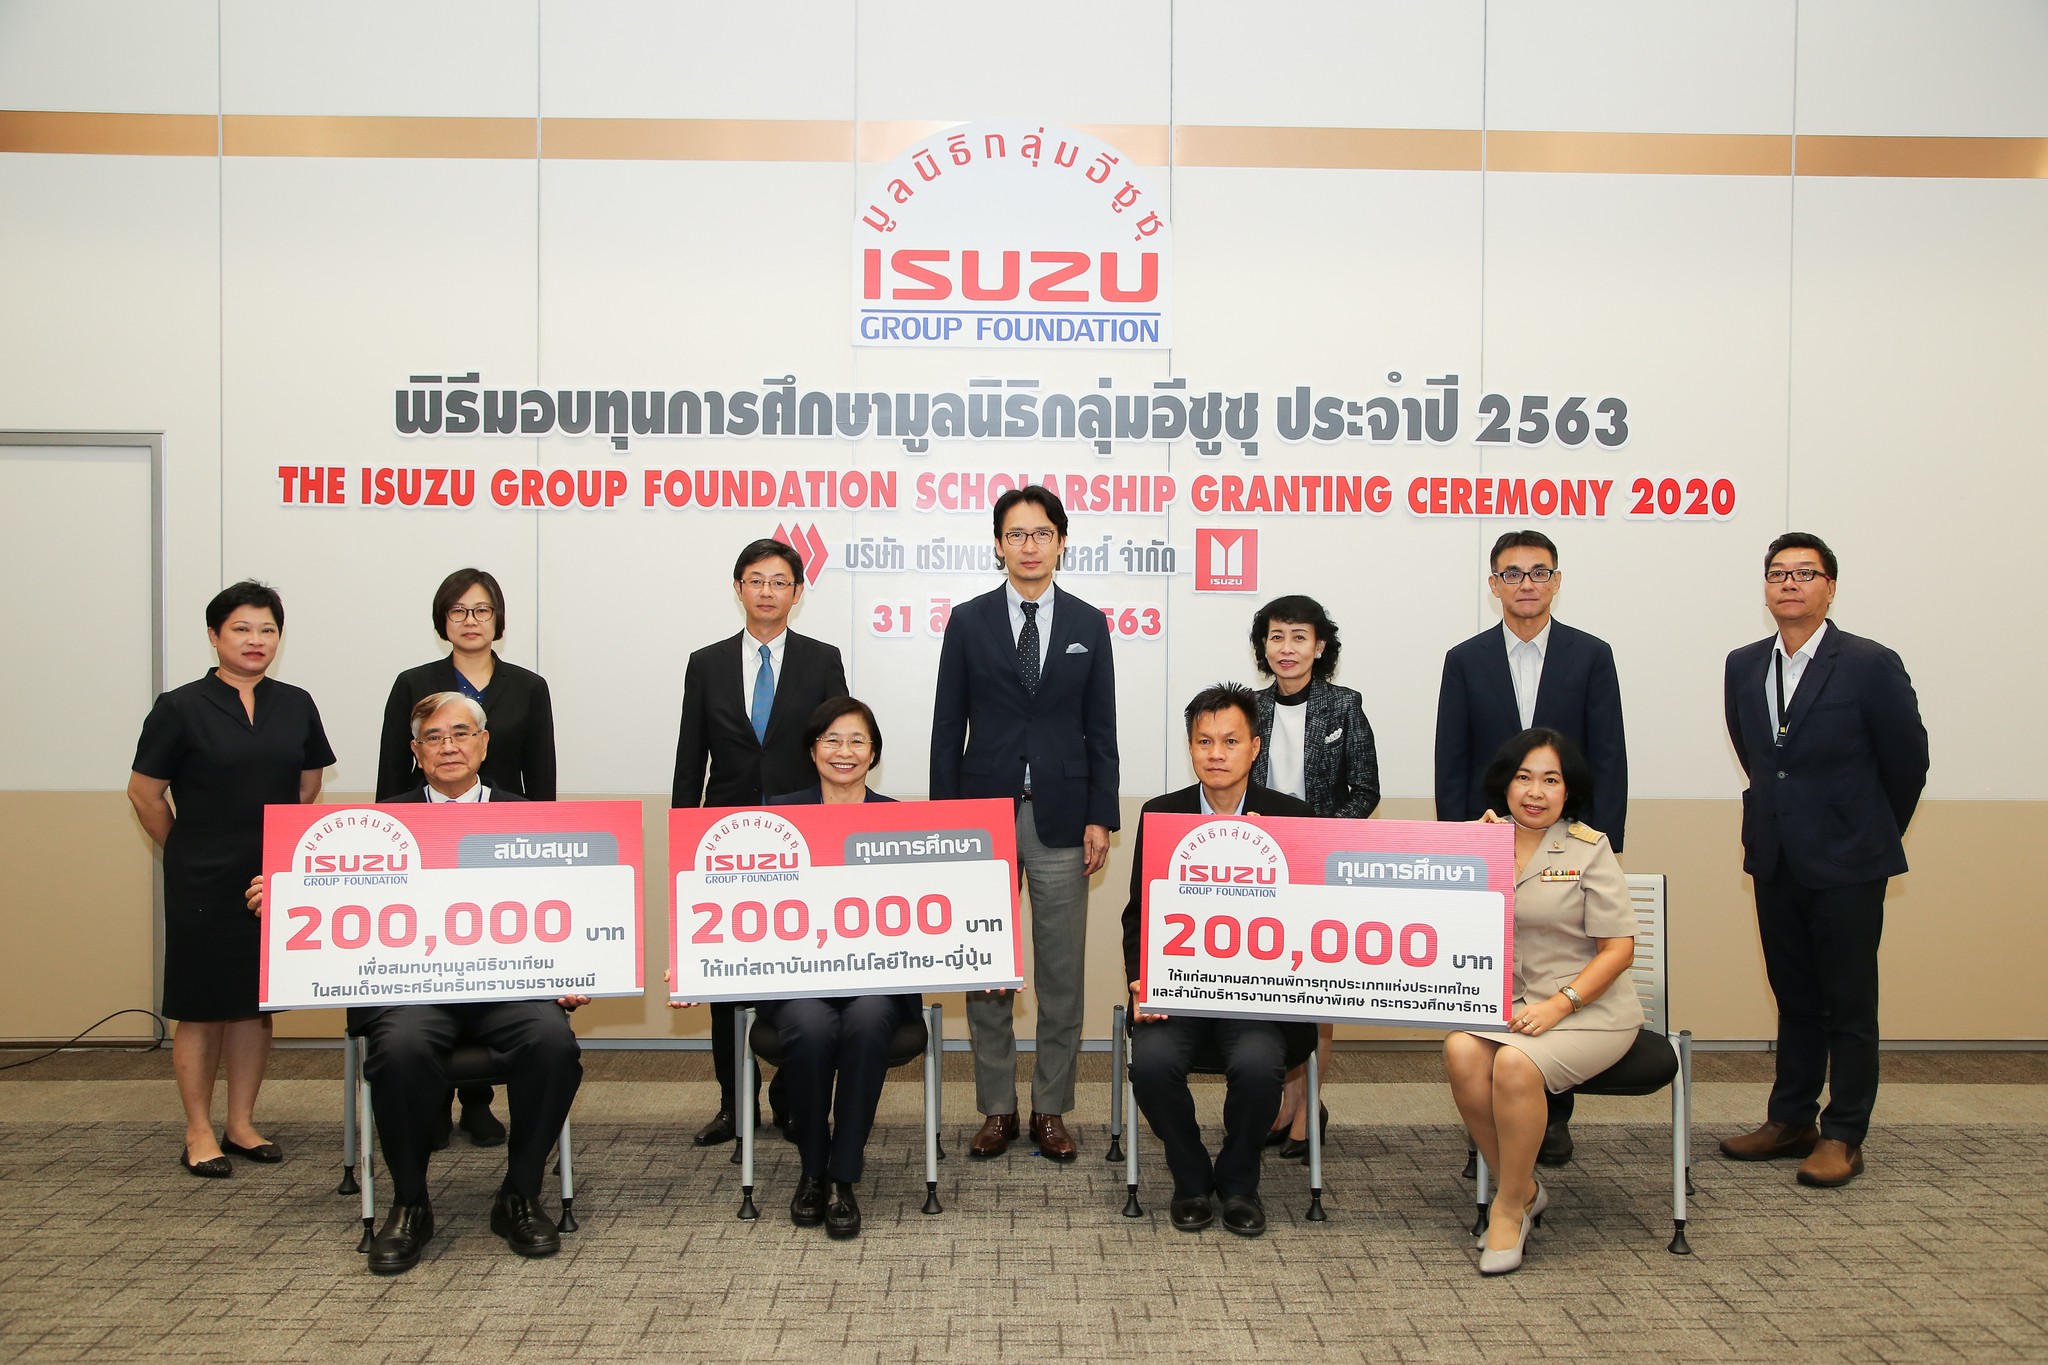 กลุ่มอีซูซุเคียงคู่สังคมไทยในทุกสถานการณ์ มอบเงินสนับสนุน 4องค์กรสาธารณประโยชน์อย่างต่อเนื่อง